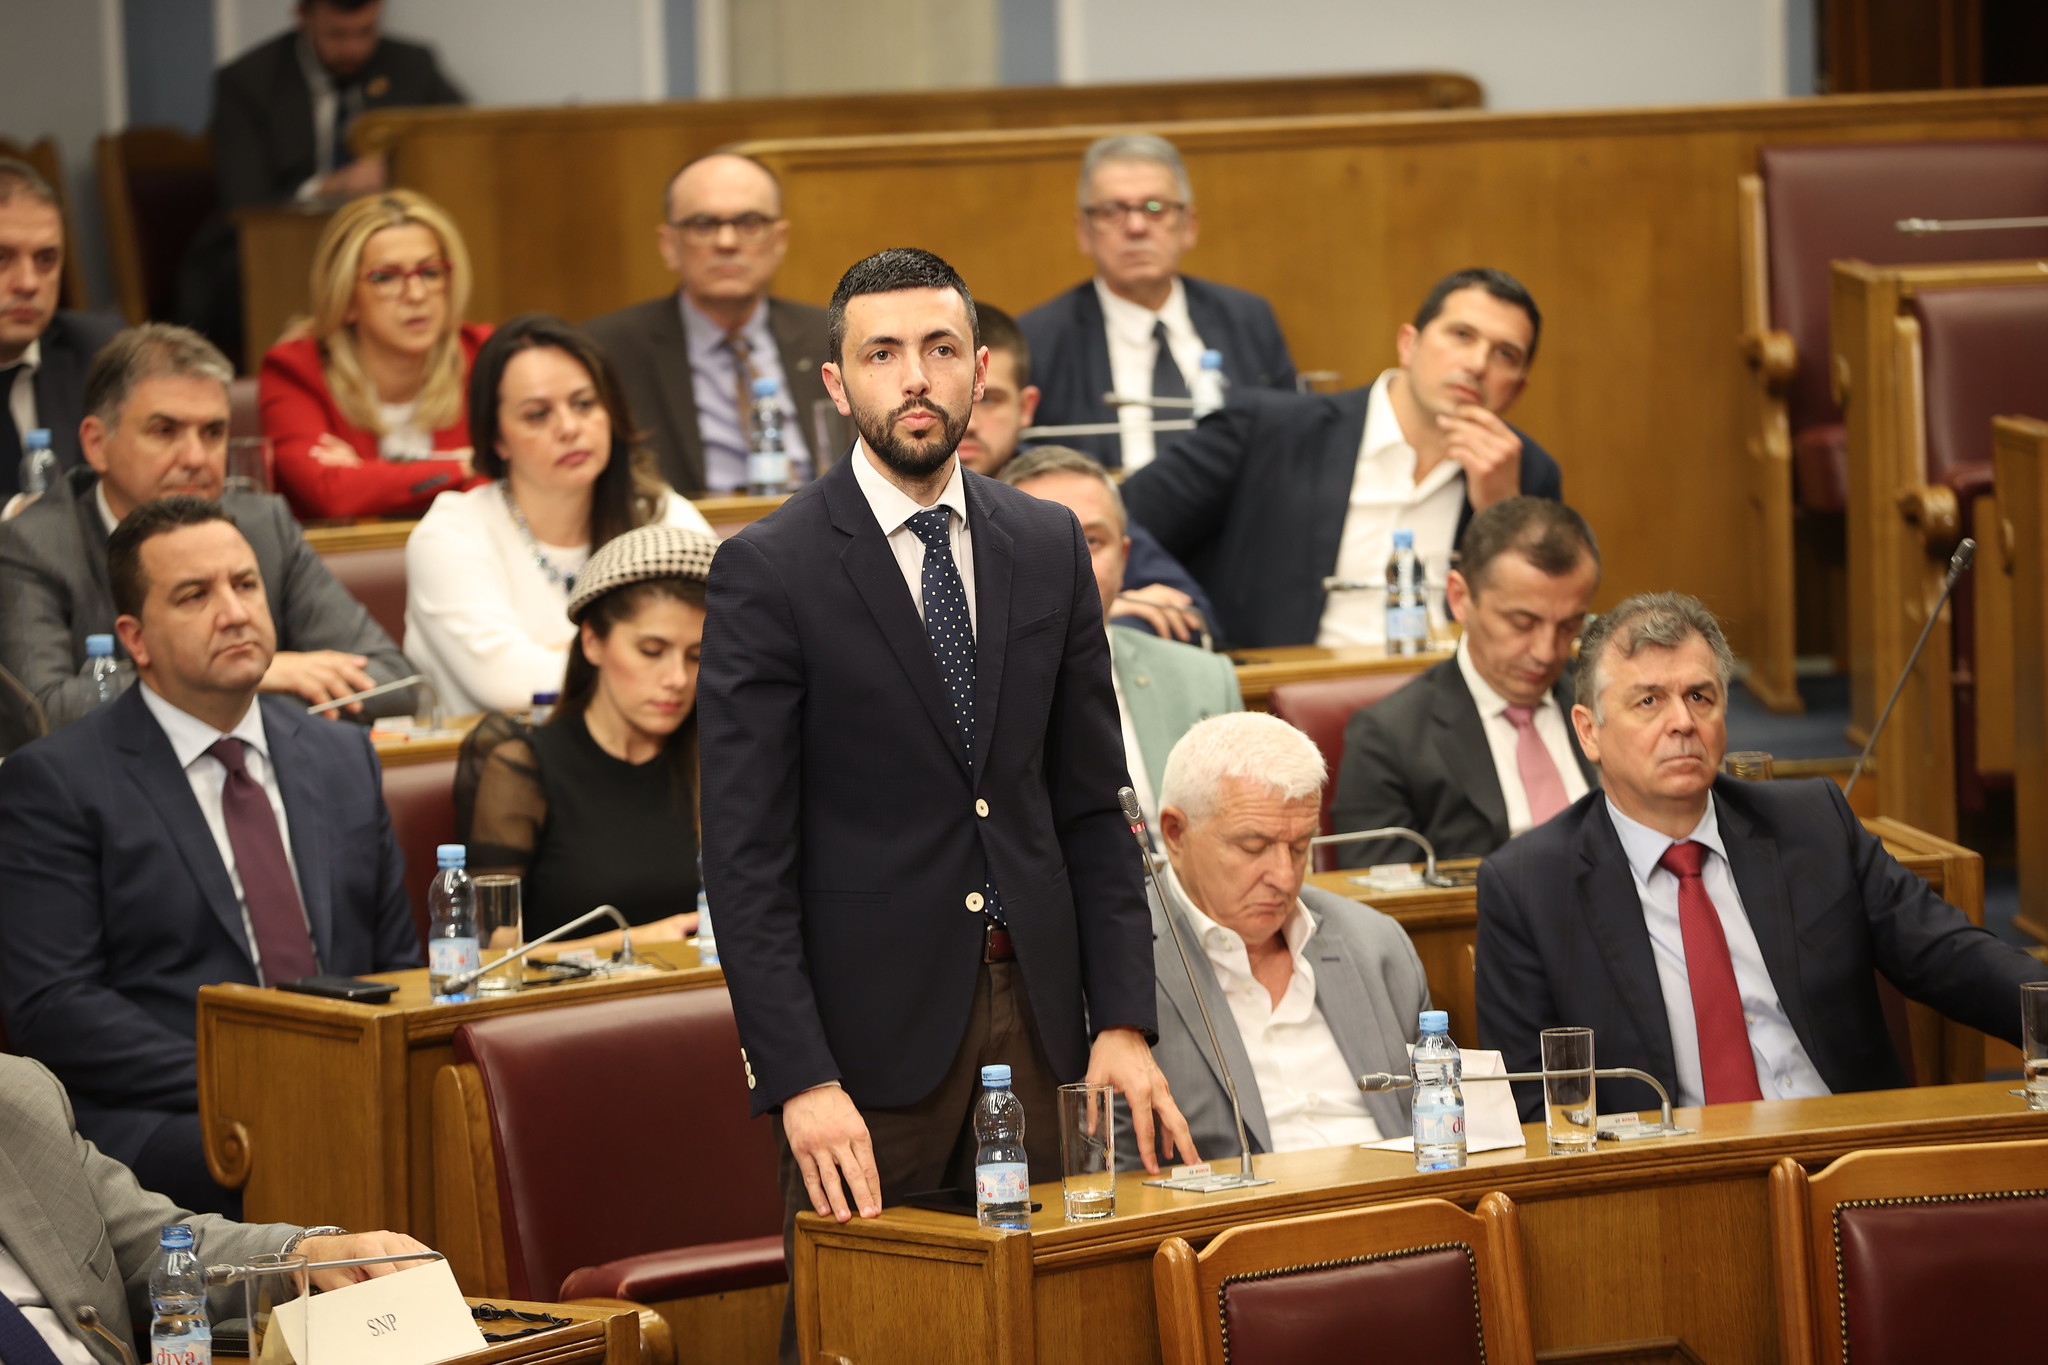 Živković pitao Abazovića: Da li ćete pozvati specijalnog tužioca da ispita rad menadžmenta kompanija koje su pretvorene u gubitaše?